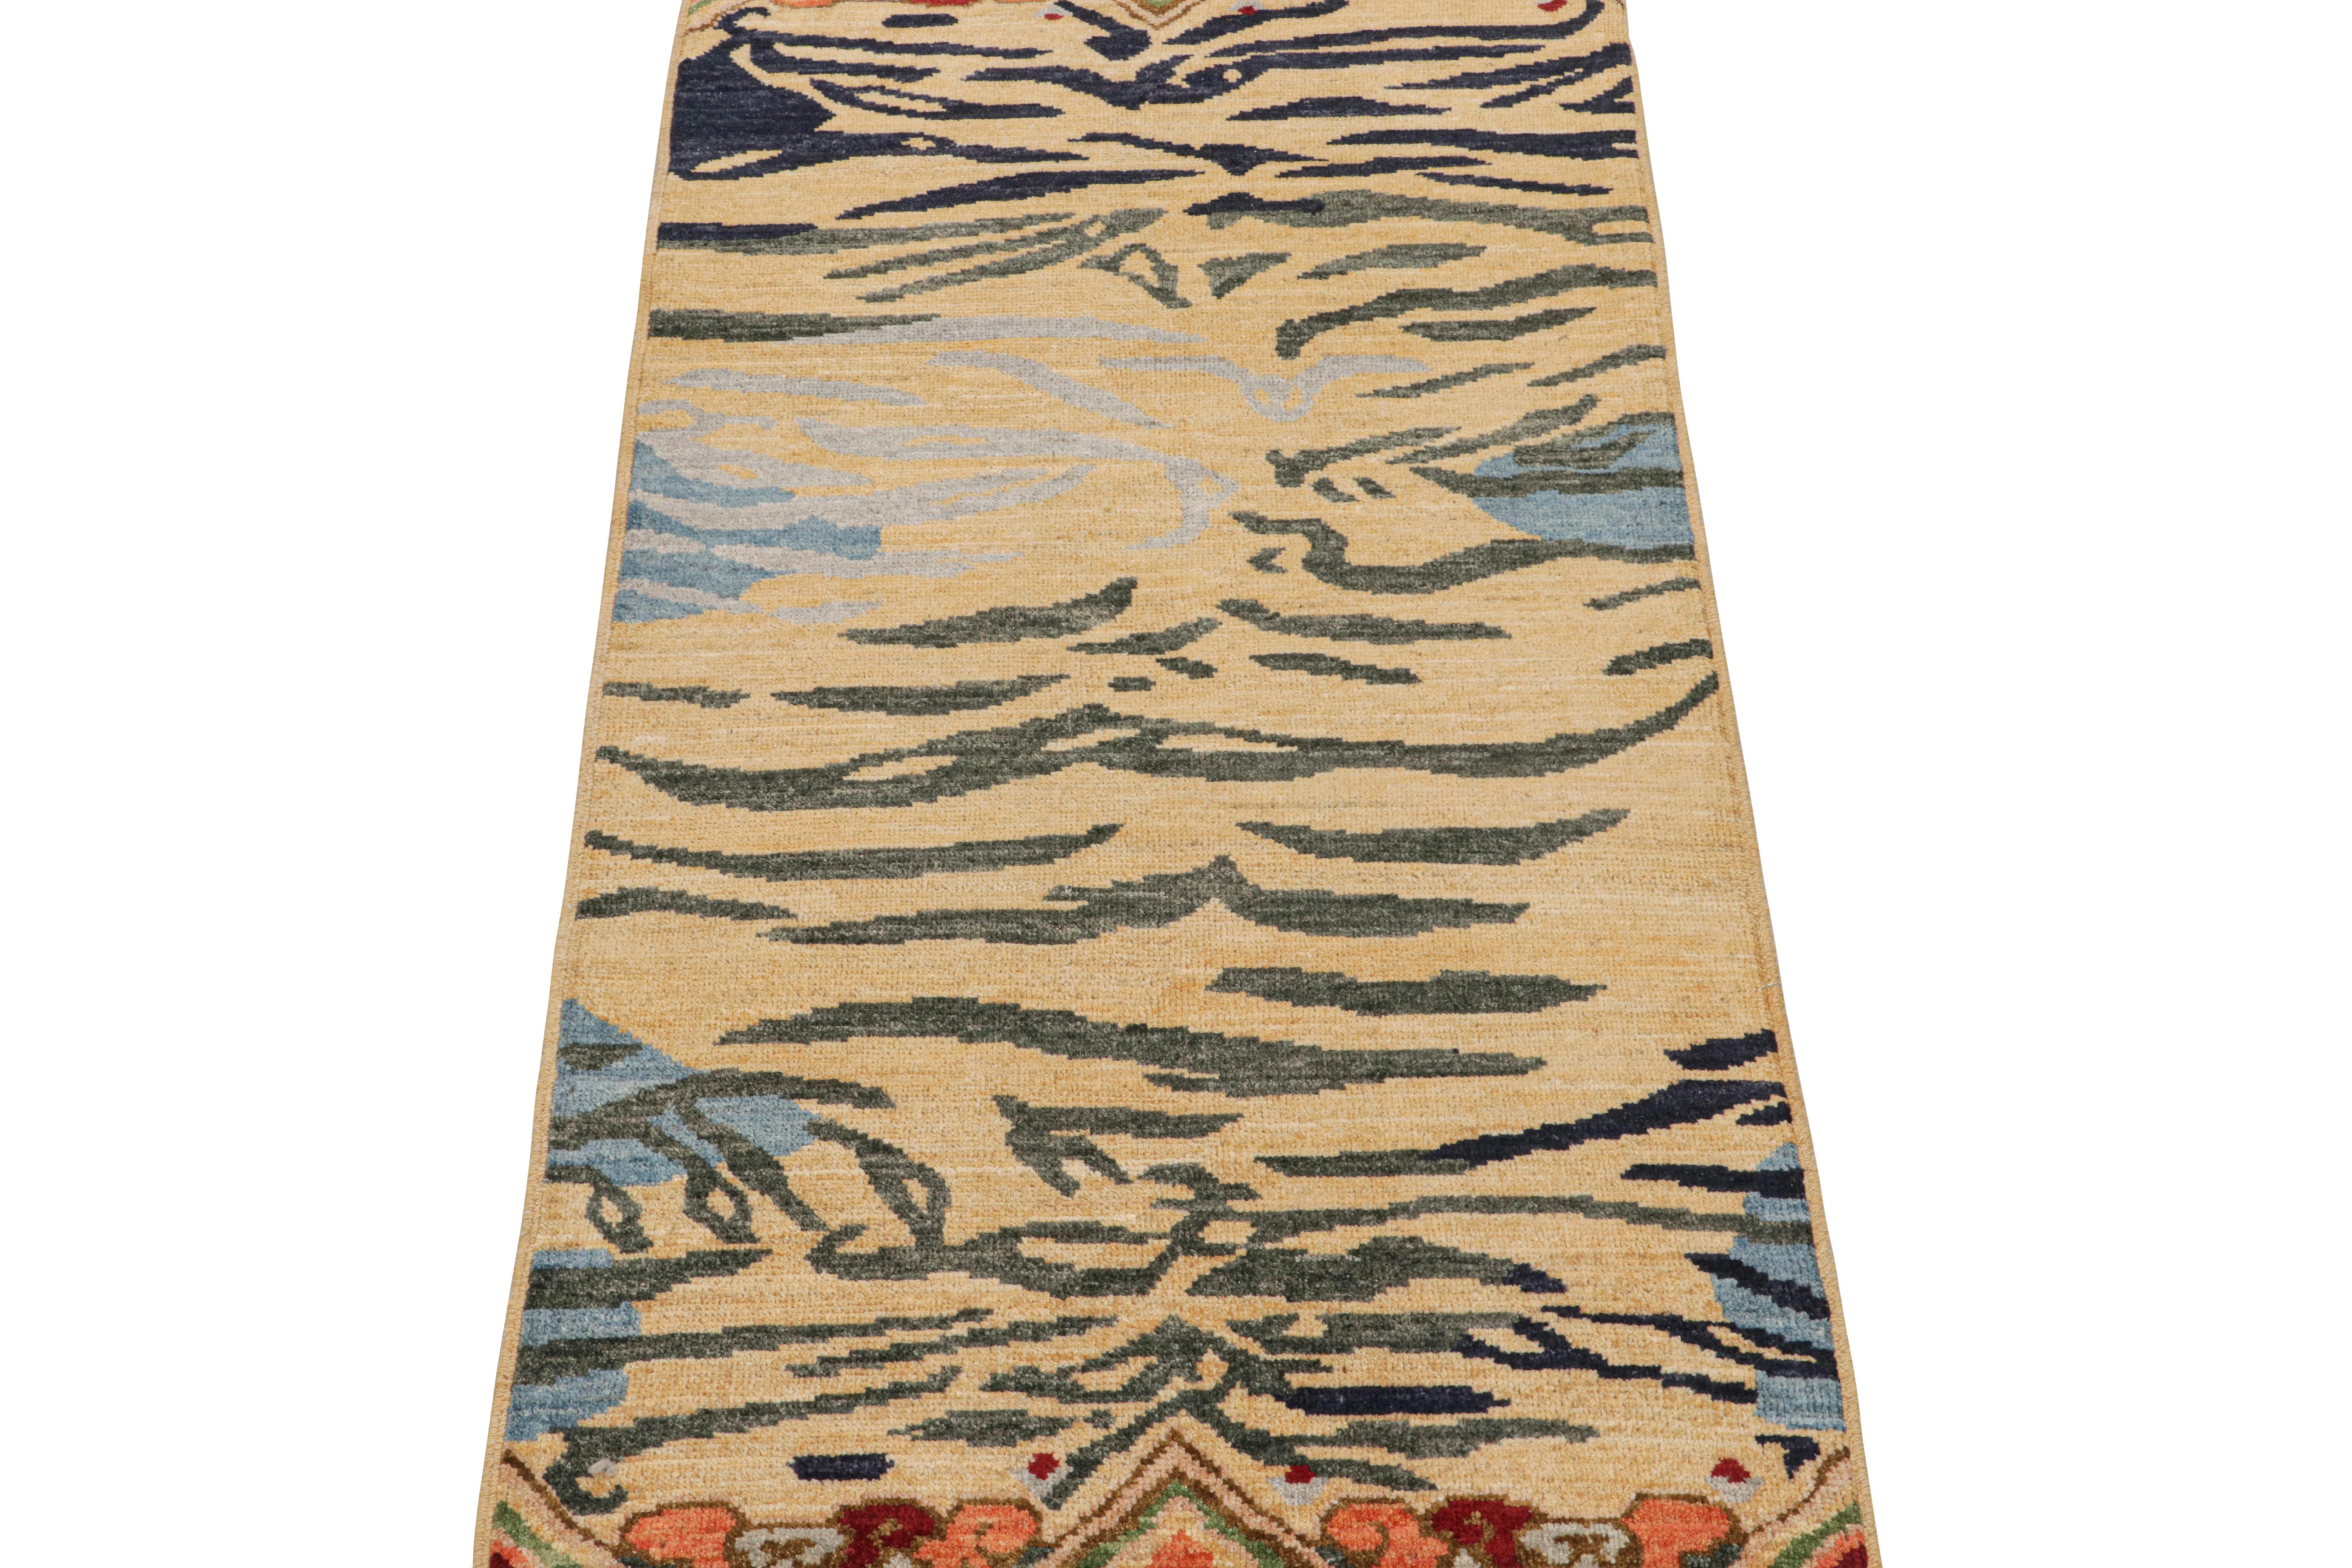 Ce tapis de course contemporain 3x6 est un nouvel ajout audacieux à la collection Tigers de Rug & Kilim. Notre collection s'étend sur plusieurs cultures et reprend les styles picturaux emblématiques de l'art populaire et des tapis orientaux faits